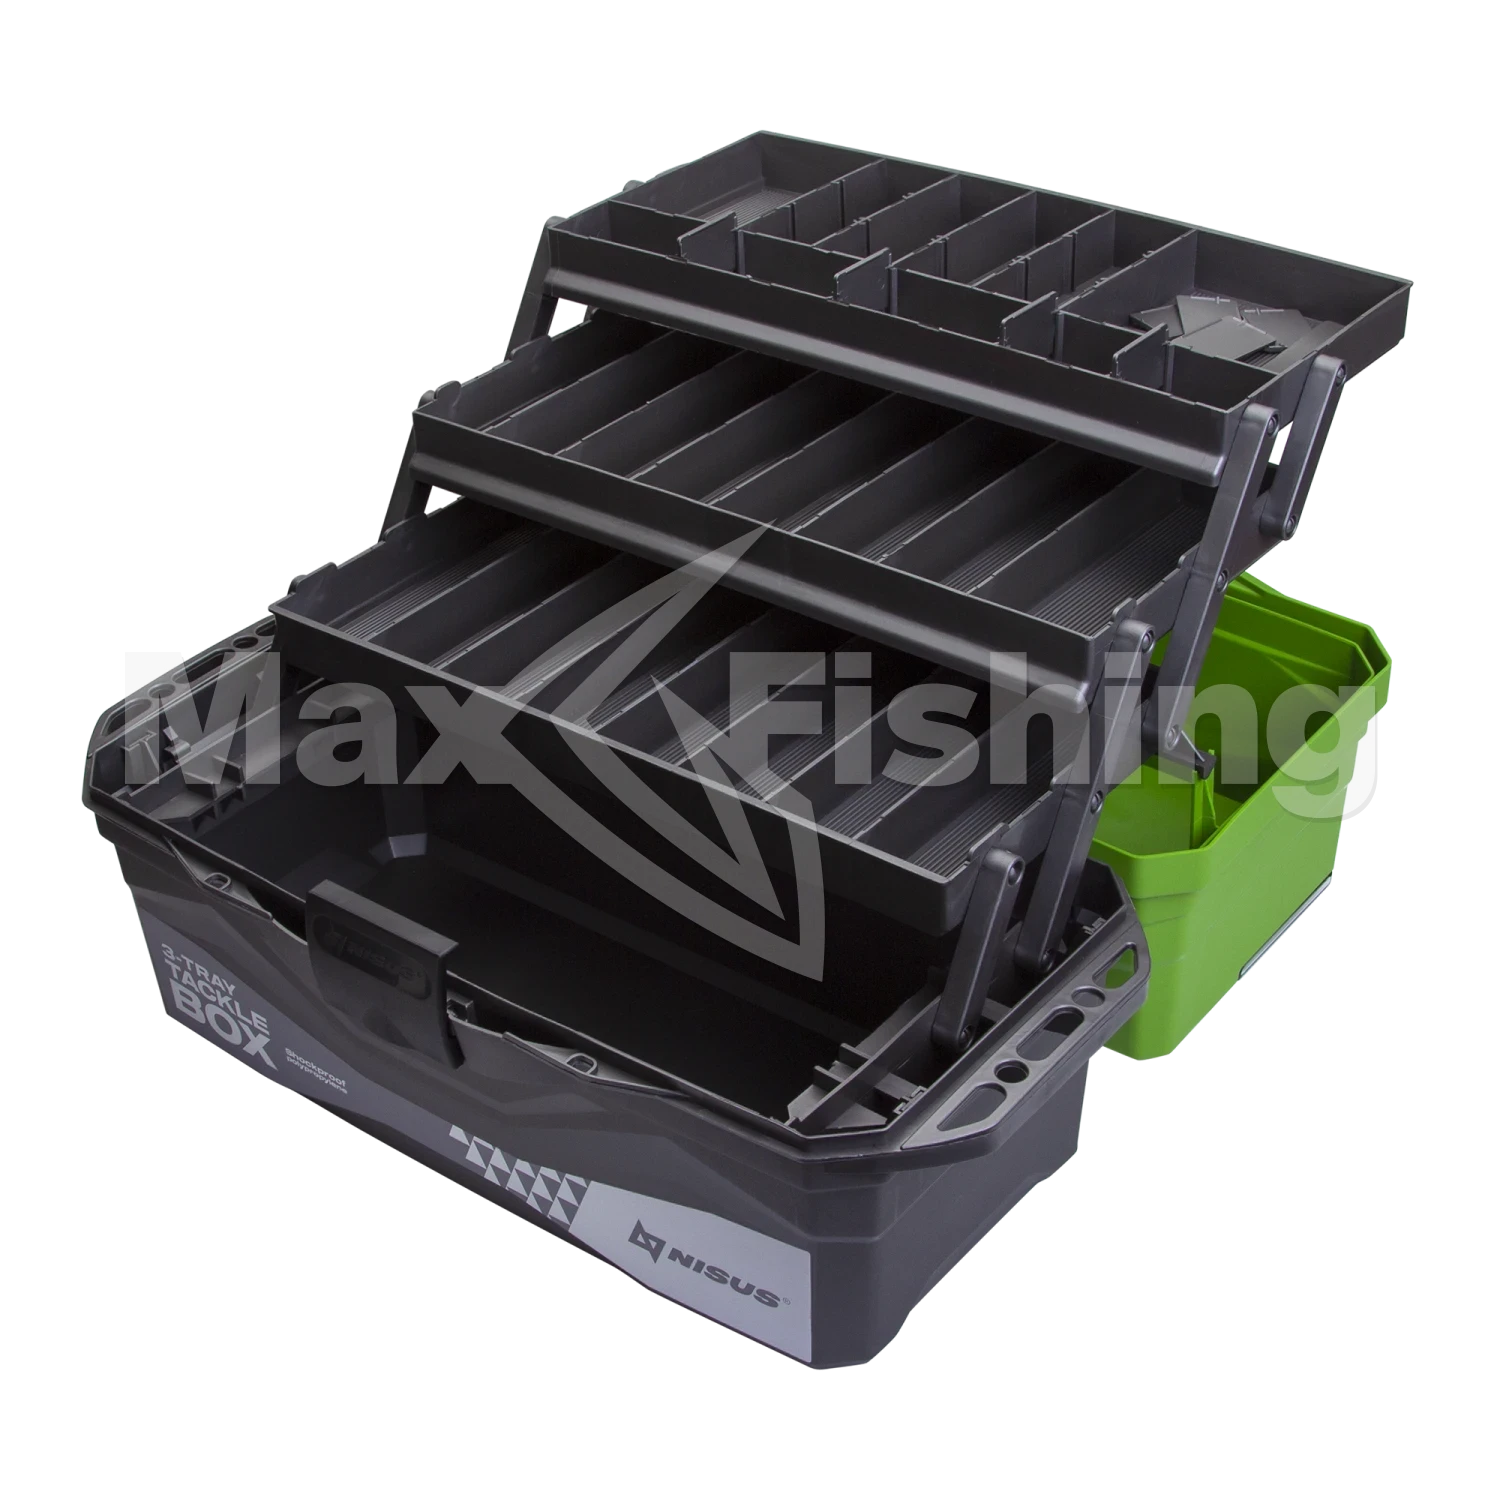 Ящик для снастей Nisus 3-Tray Tackle Box зеленый